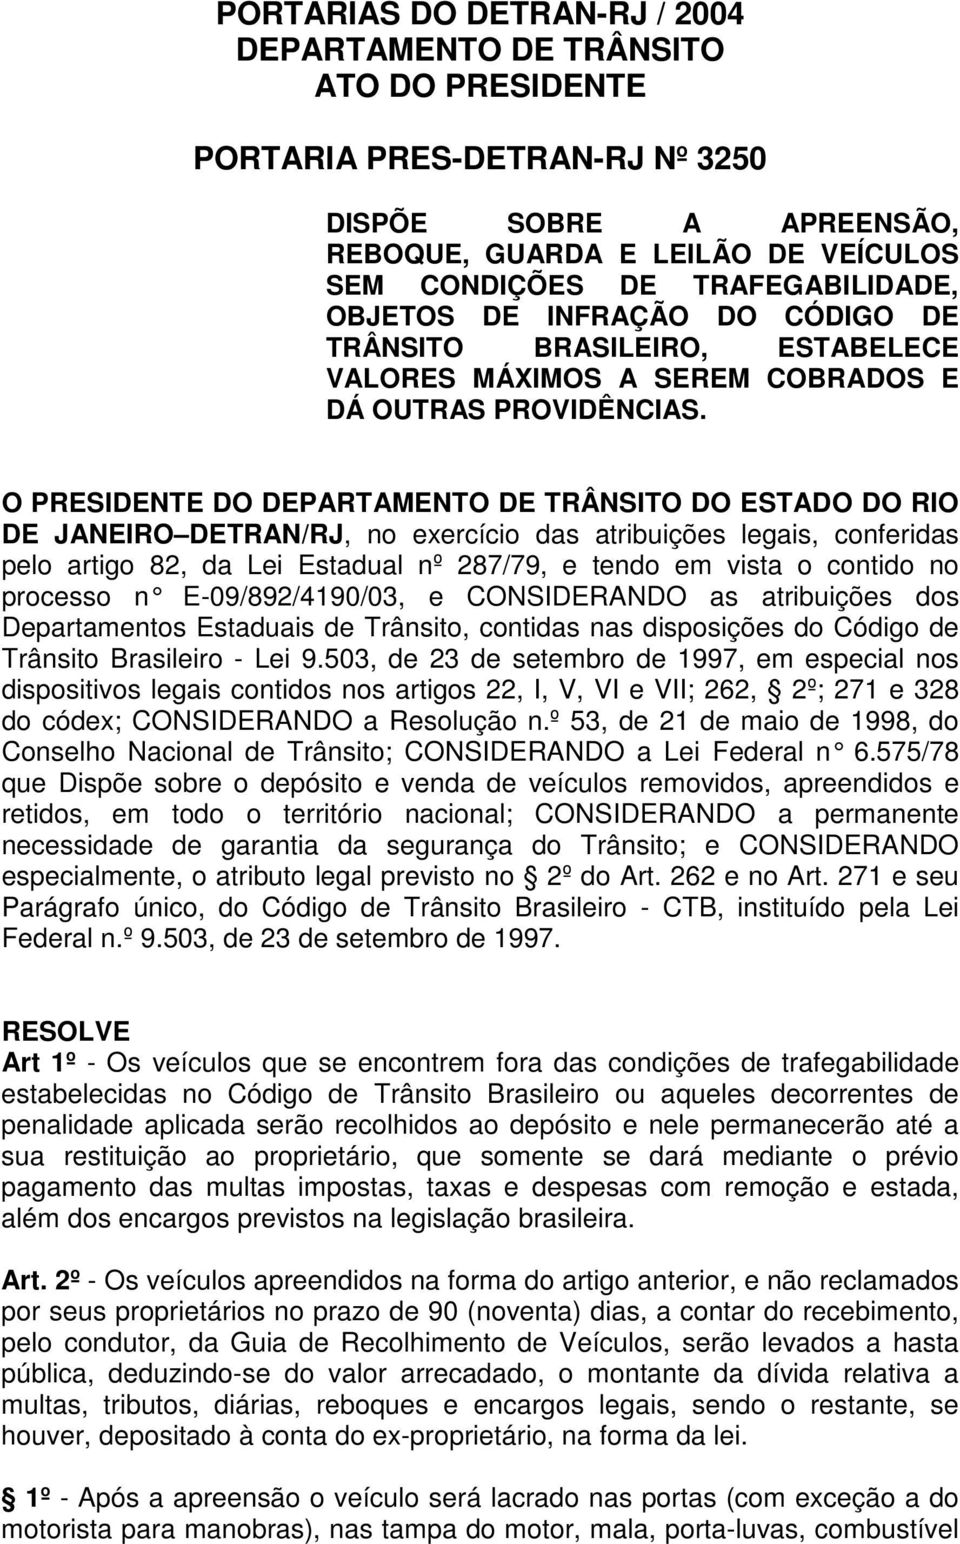 O PRESIDENTE DO DEPARTAMENTO DE TRÂNSITO DO ESTADO DO RIO DE JANEIRO DETRAN/RJ, no exercício das atribuições legais, conferidas pelo artigo 82, da Lei Estadual nº 287/79, e tendo em vista o contido